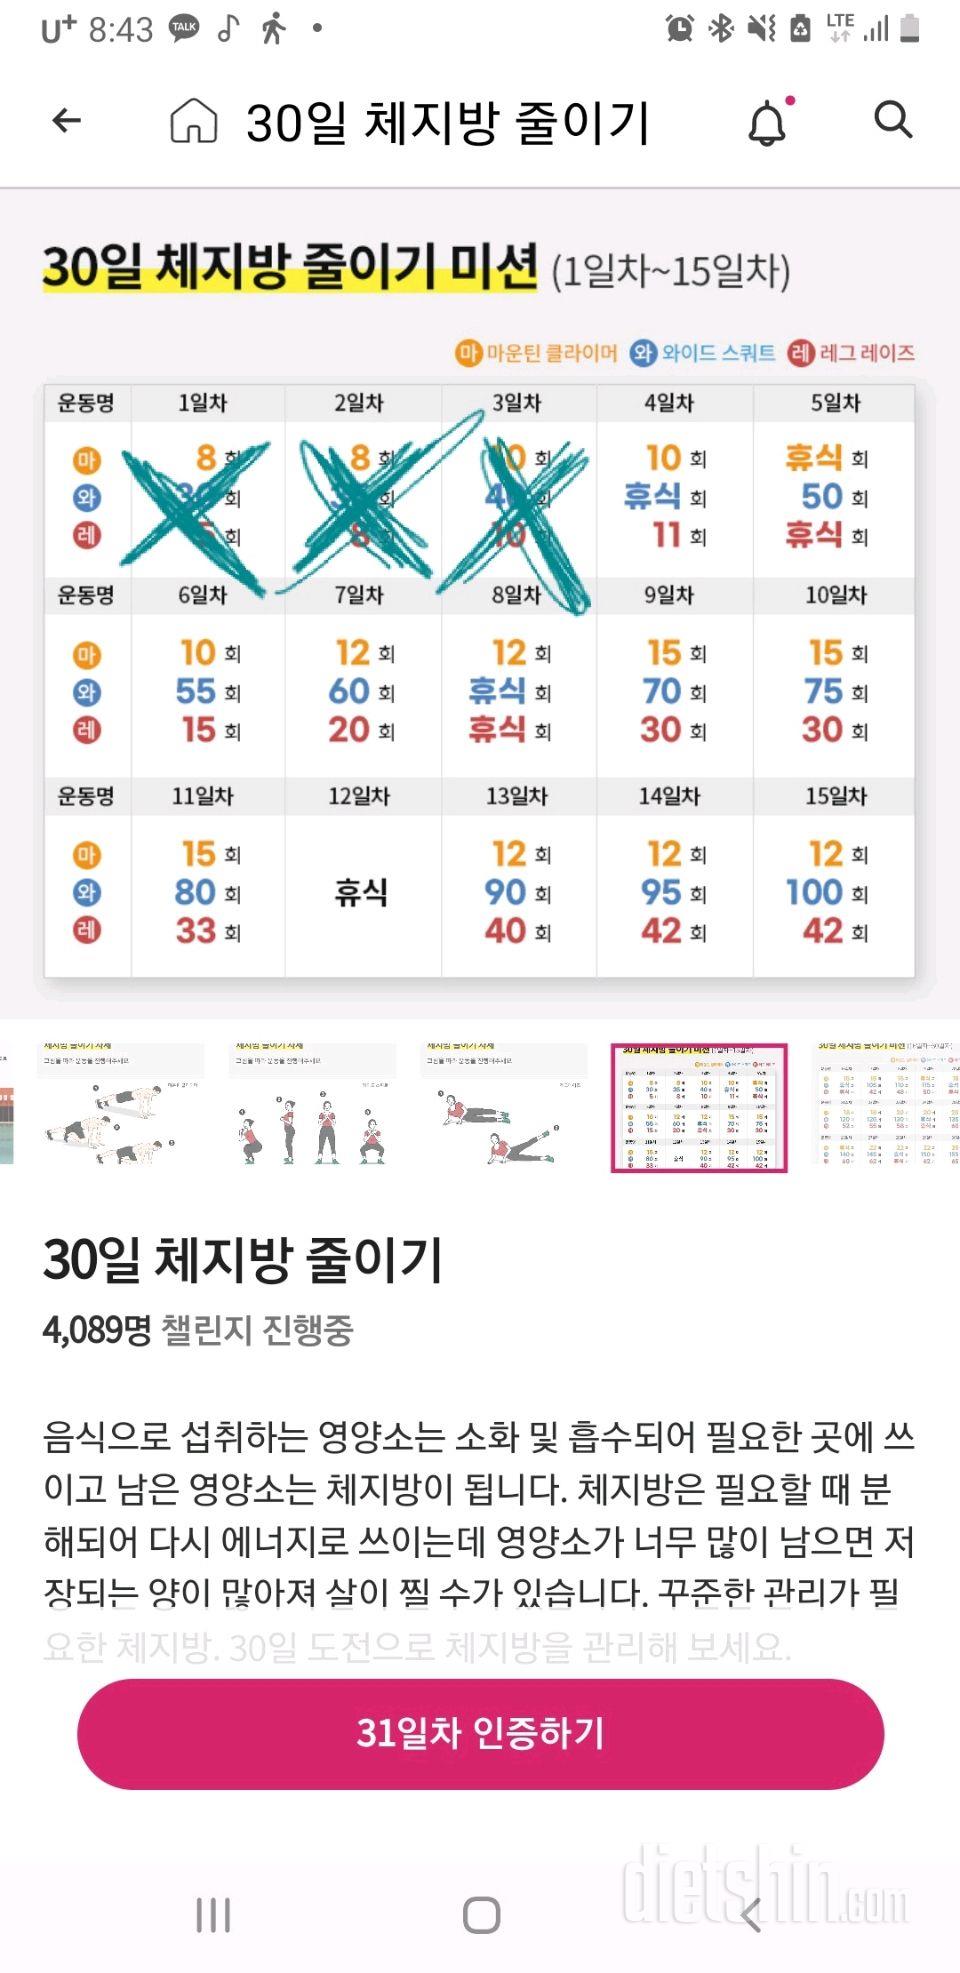 30일 유산소 운동33일차 성공!